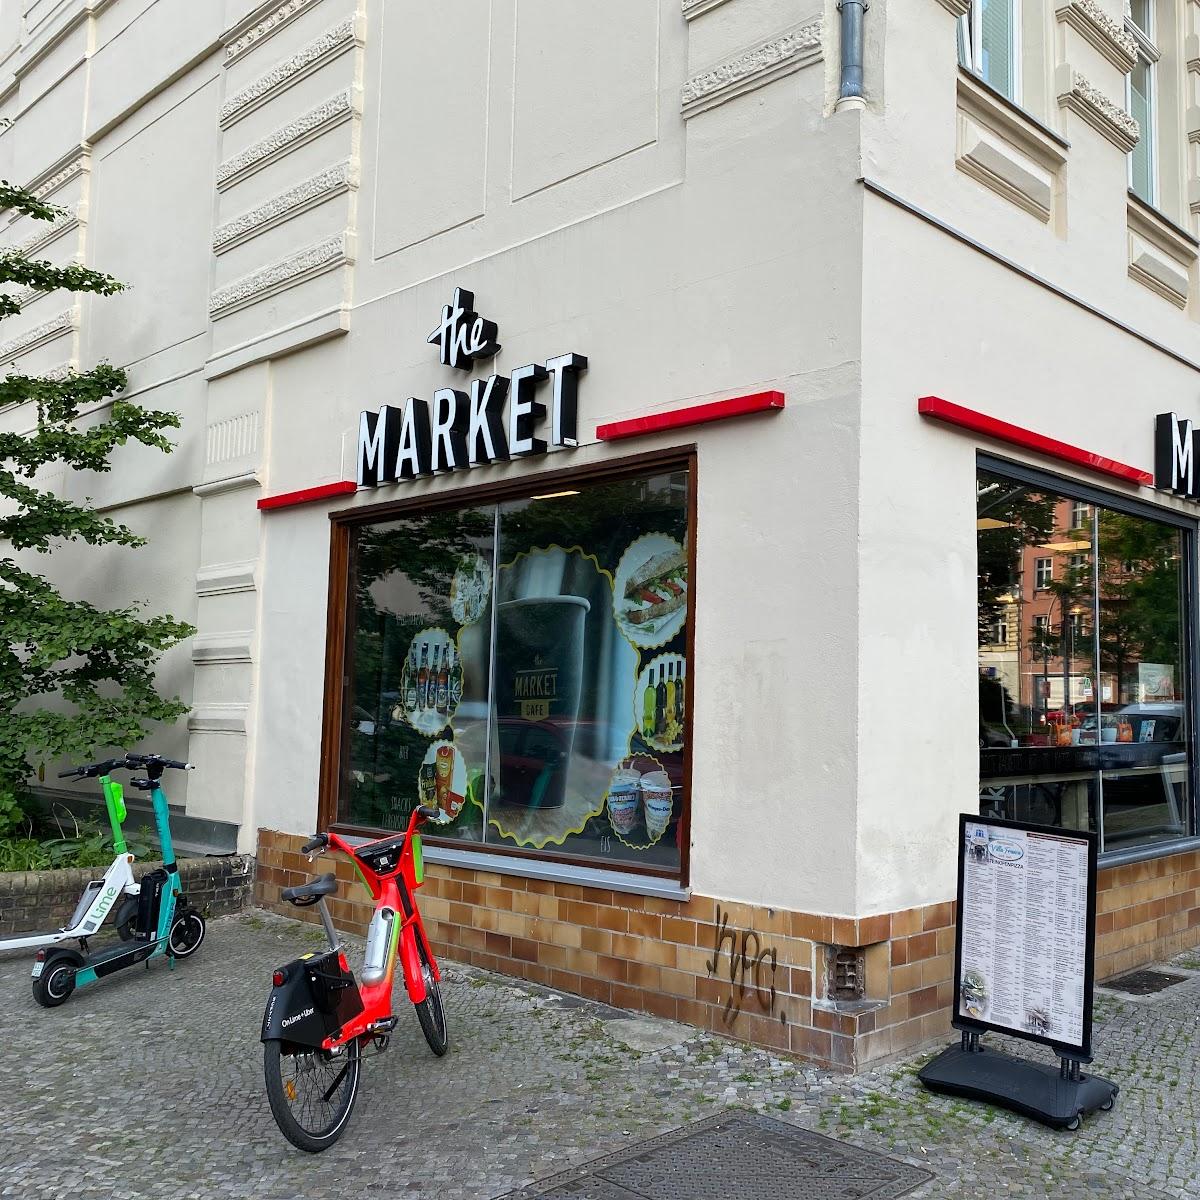 Restaurant "The Market" in Berlin